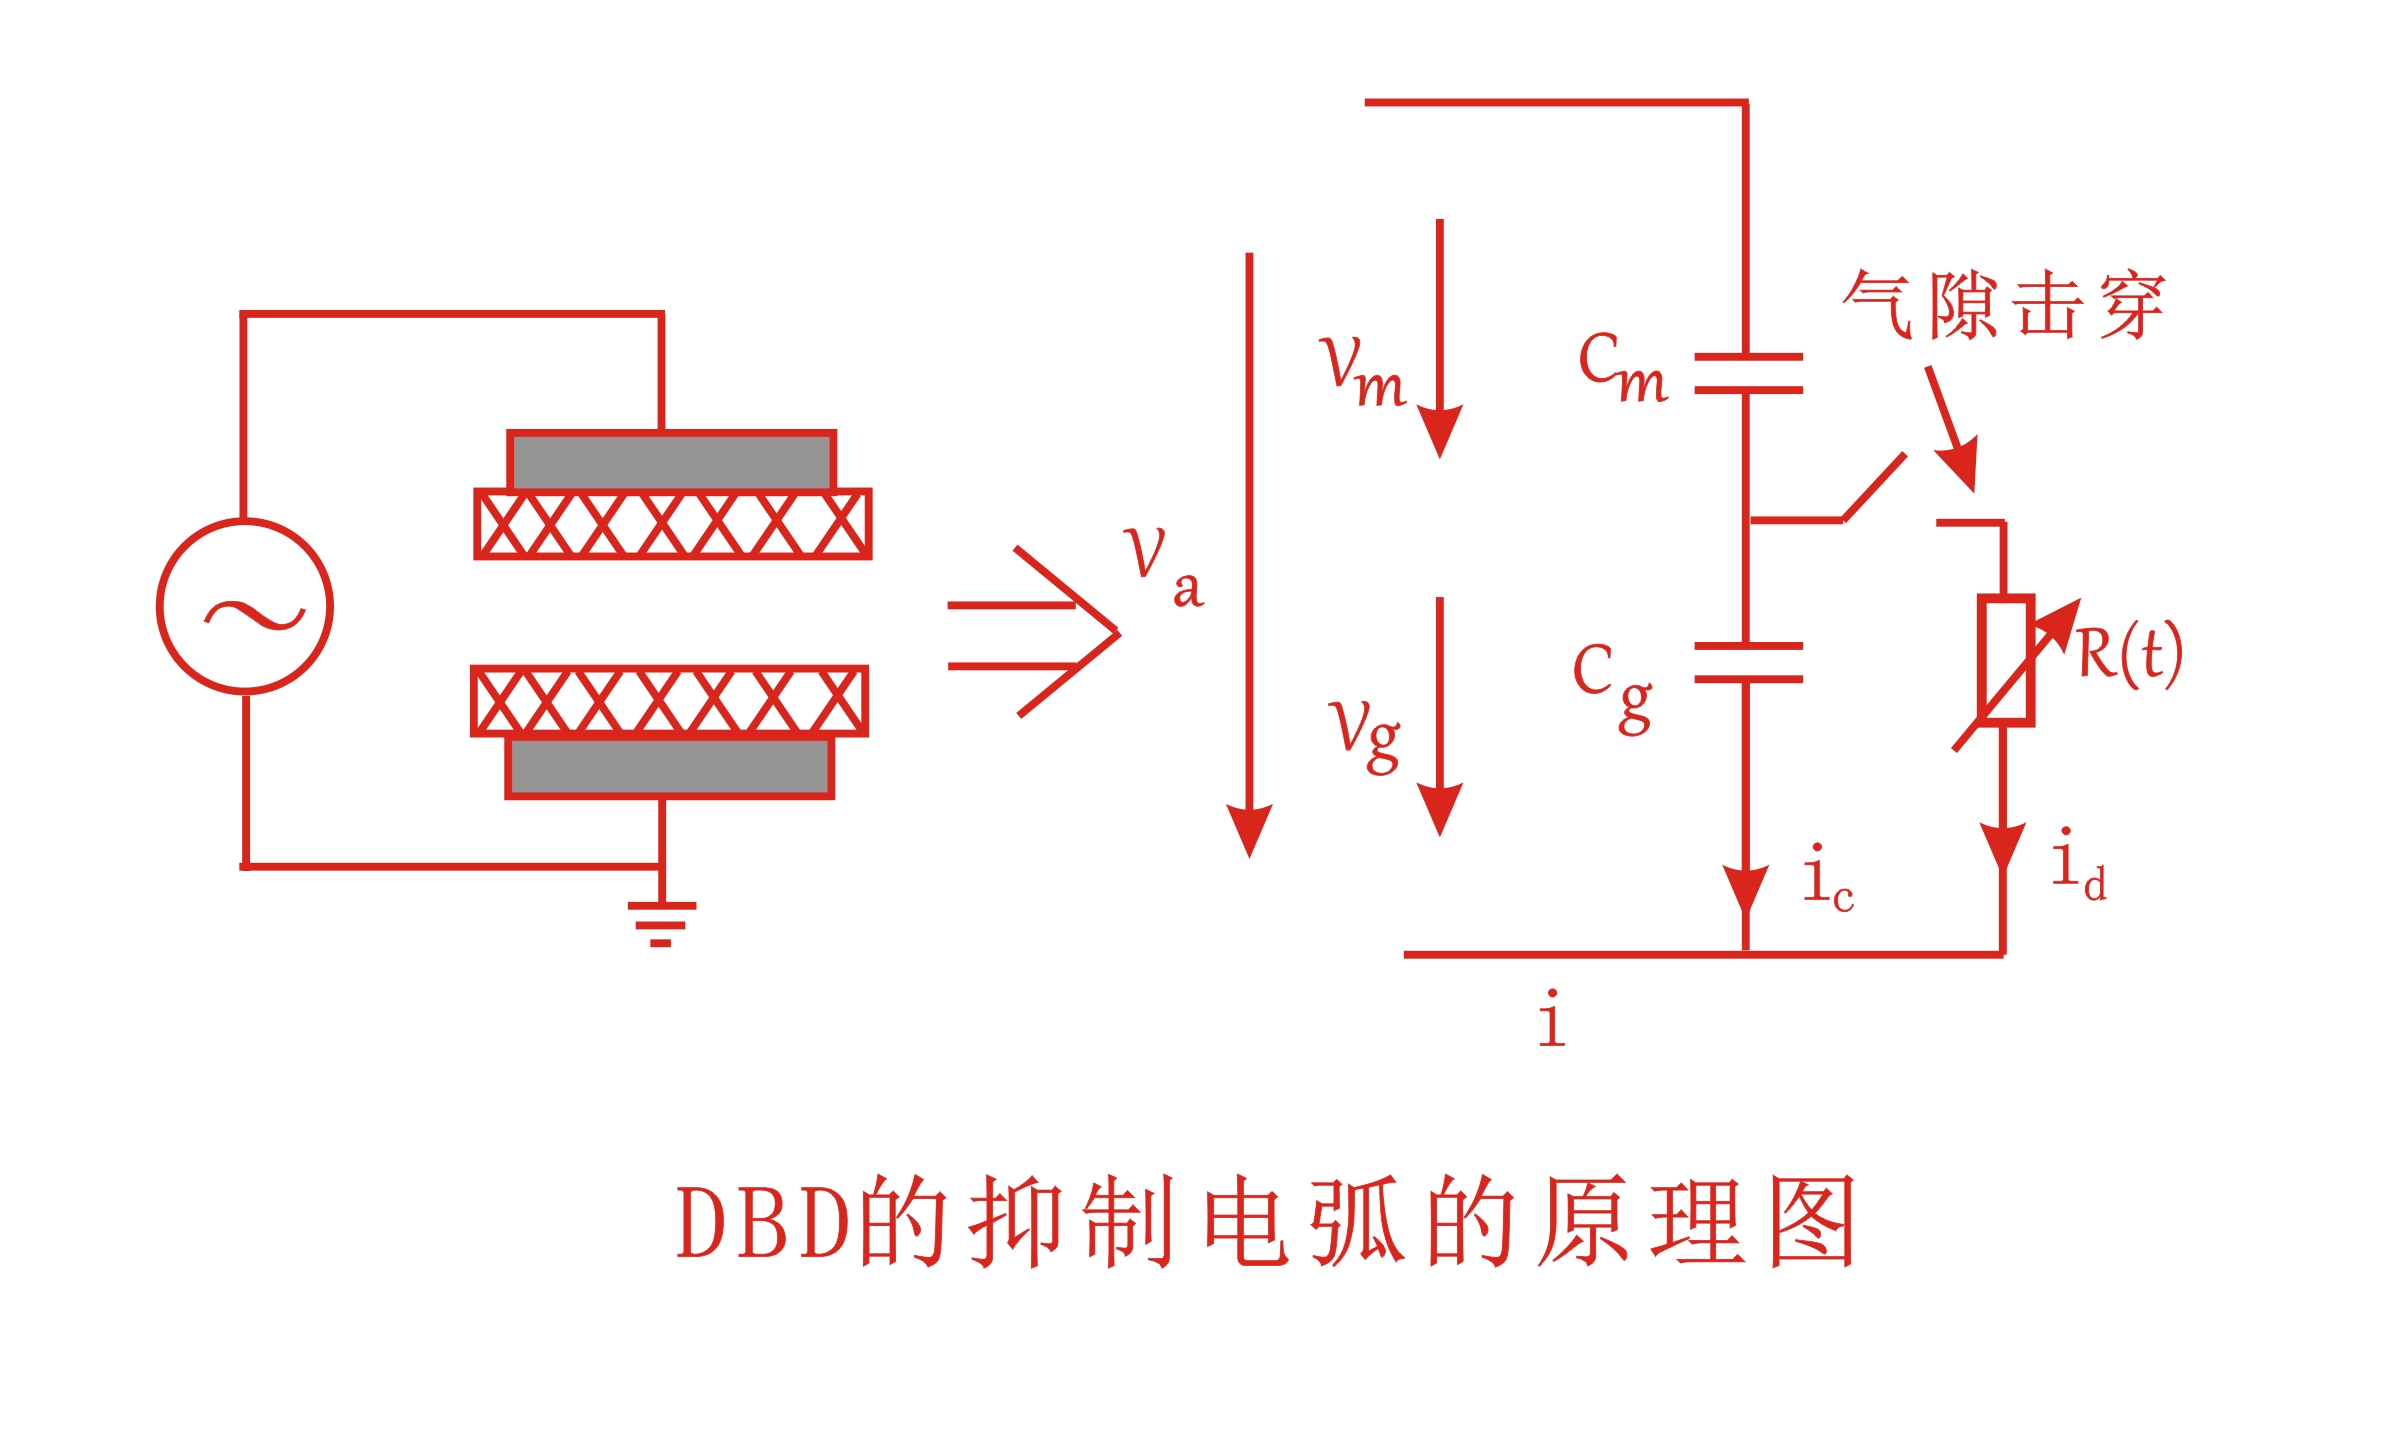 大气DBD等离子清洗机抑制电弧的原理图-普乐斯等离子表面处理